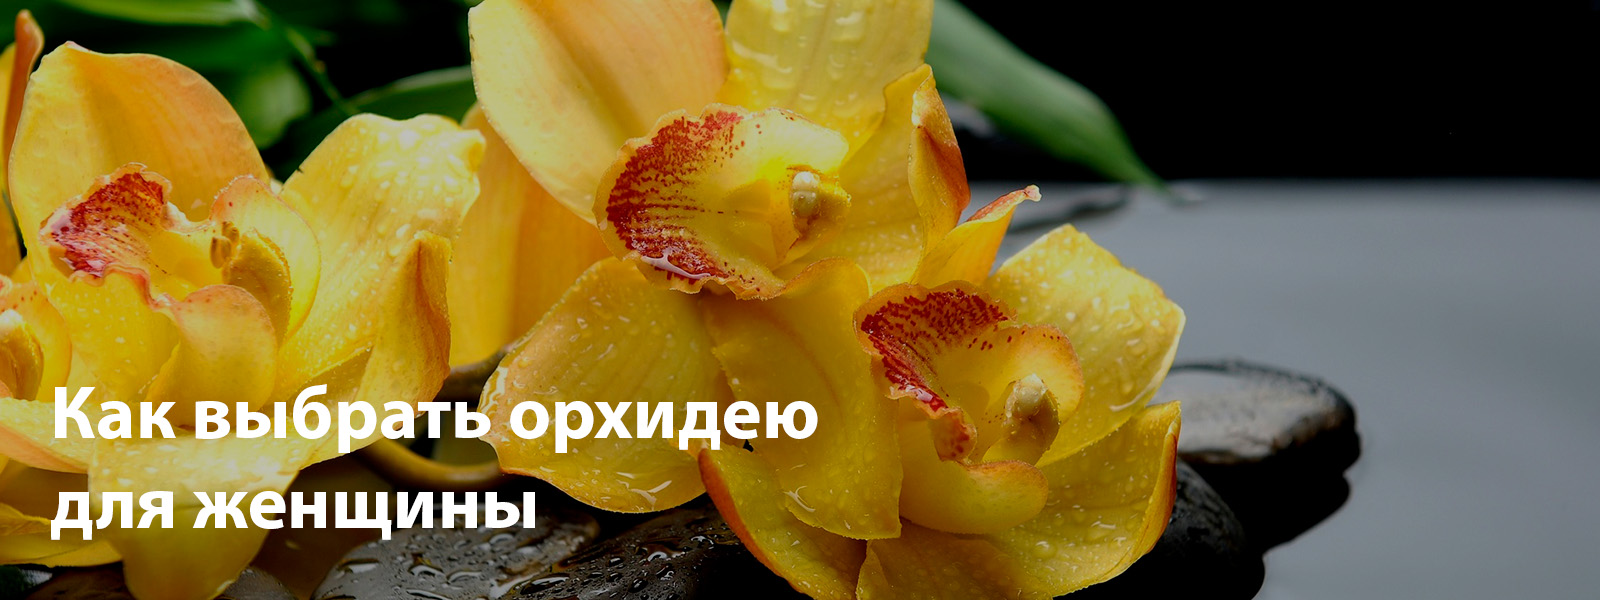 Как выбрать орхидею для женщины